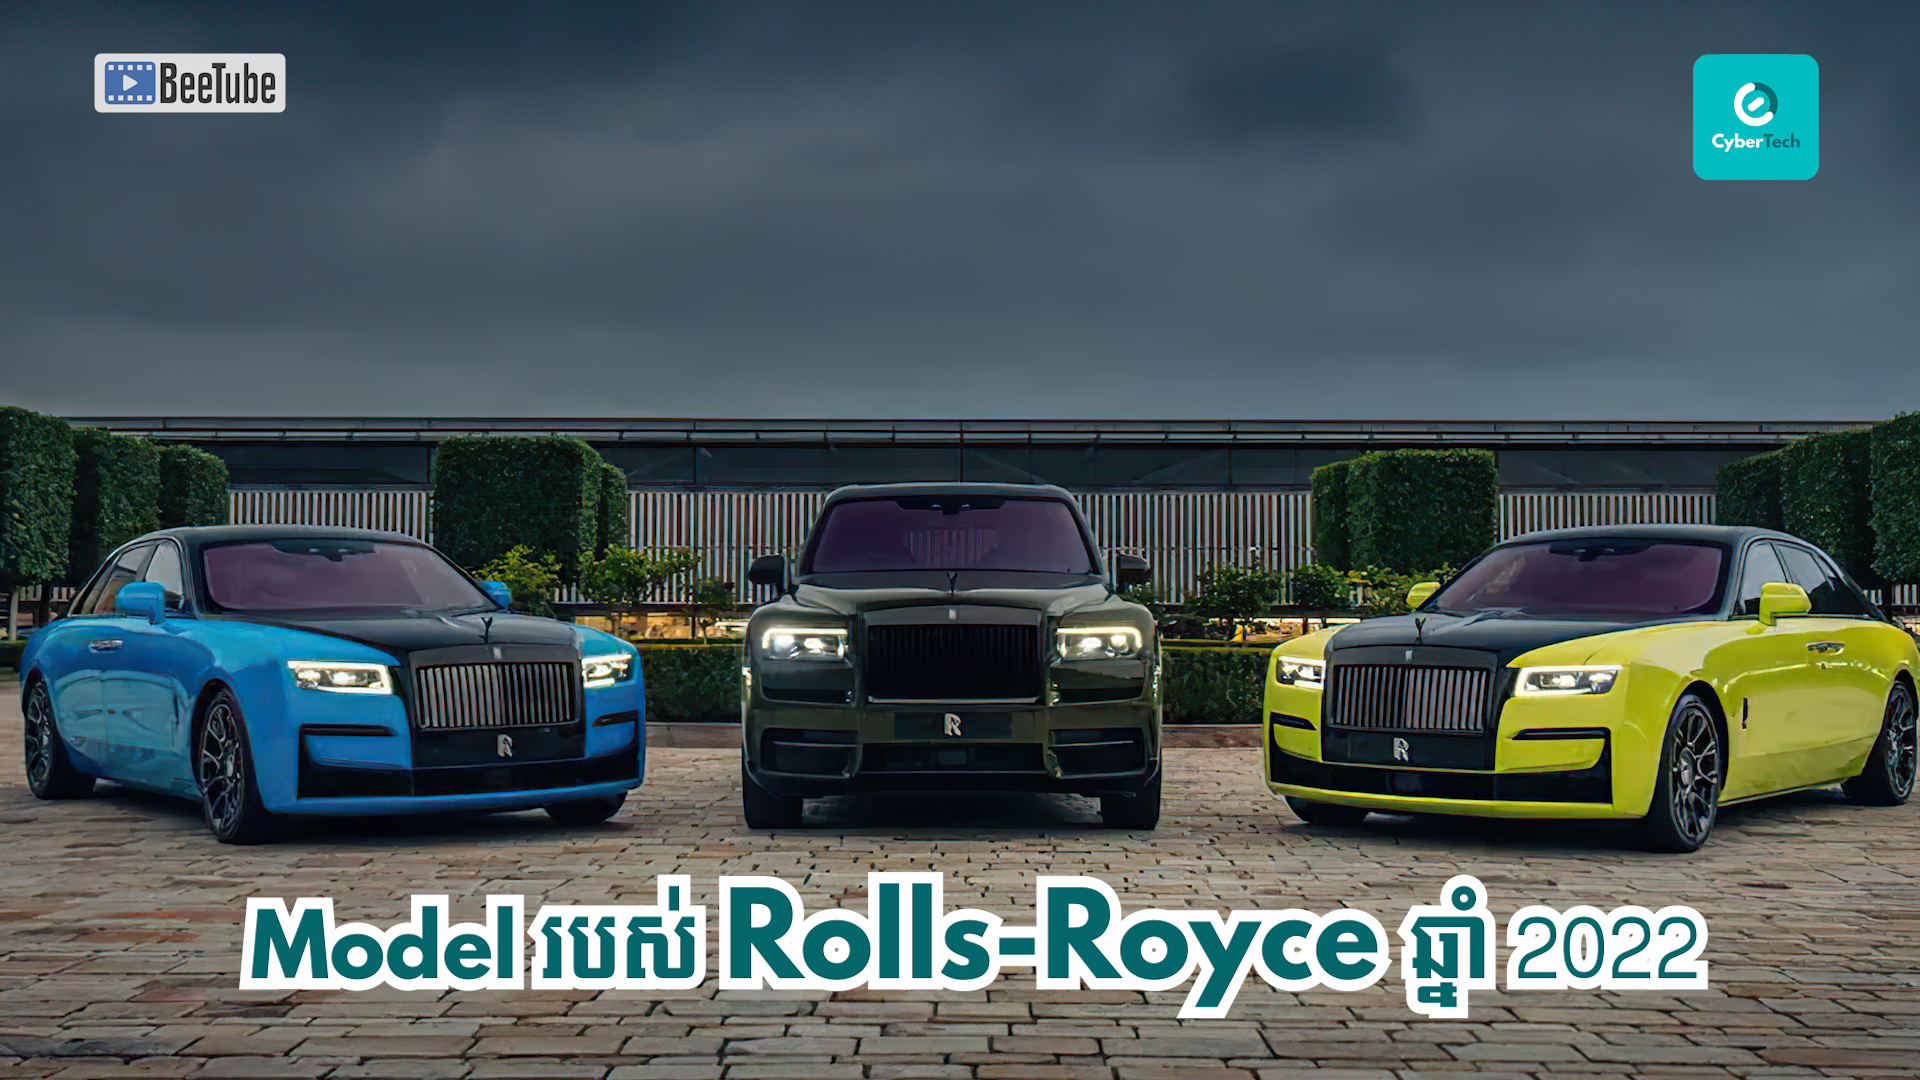 តើ Rolls-Royce មានប៉ុន្មានម៉ូដែលសម្រាប់ឆ្នាំ ២០២២?